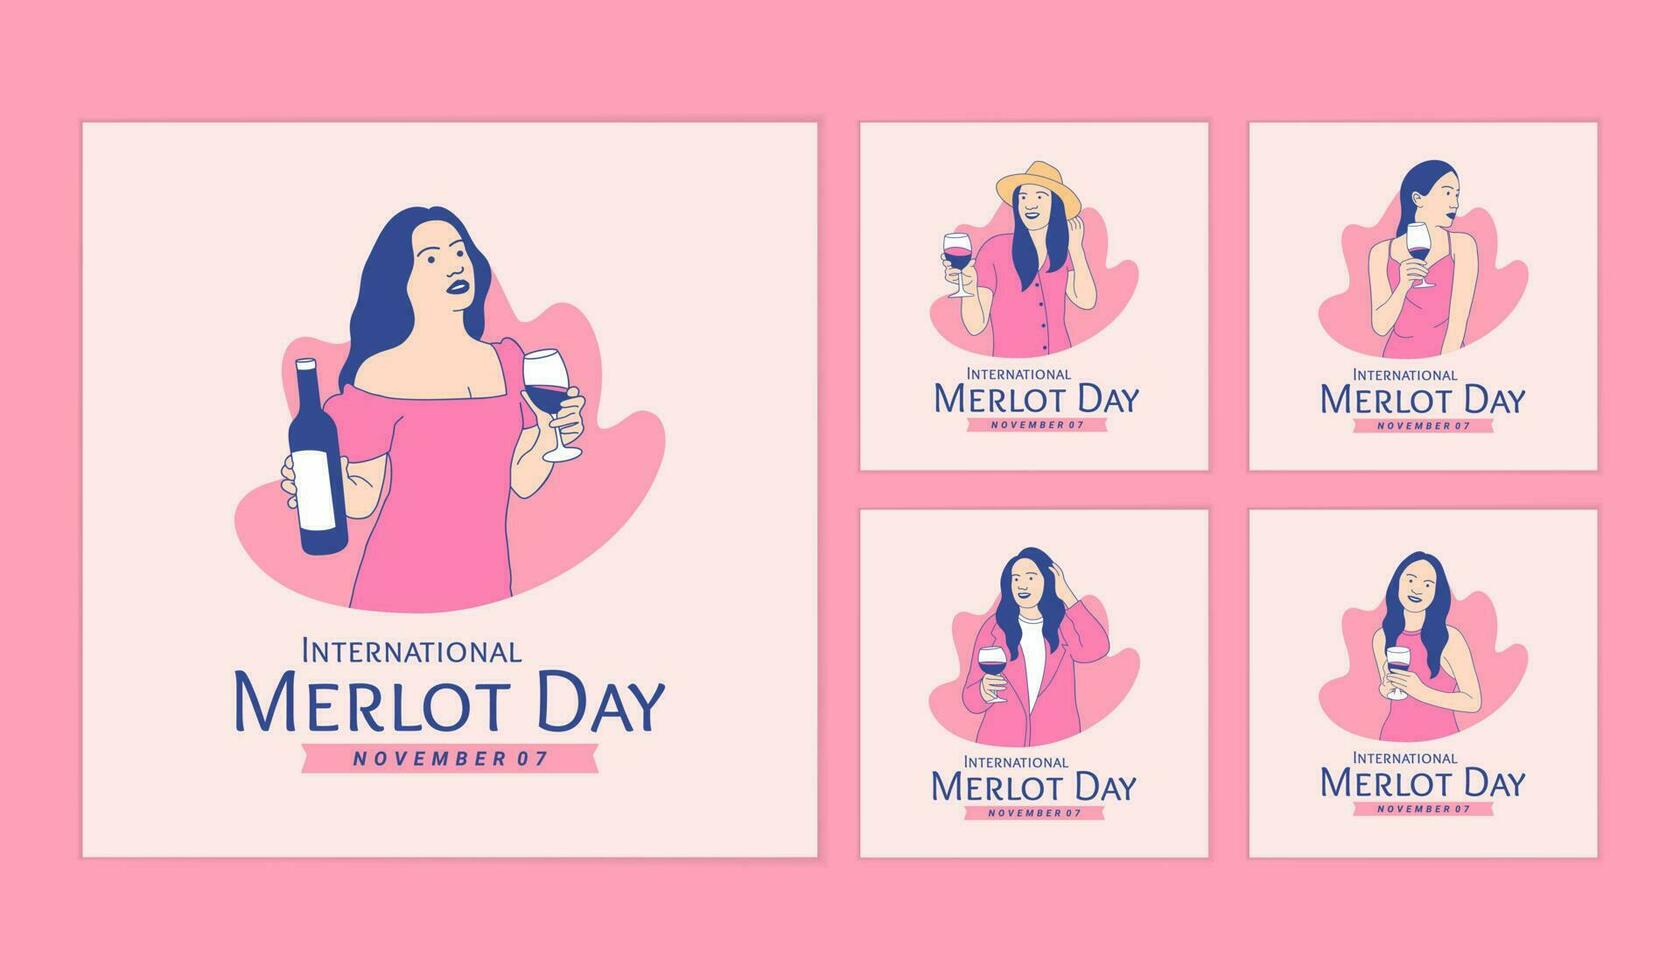 illustrazioni bellissimo donna godere Tenere merlot vino per internazionale merlot giorno sociale media messaggi collezione vettore